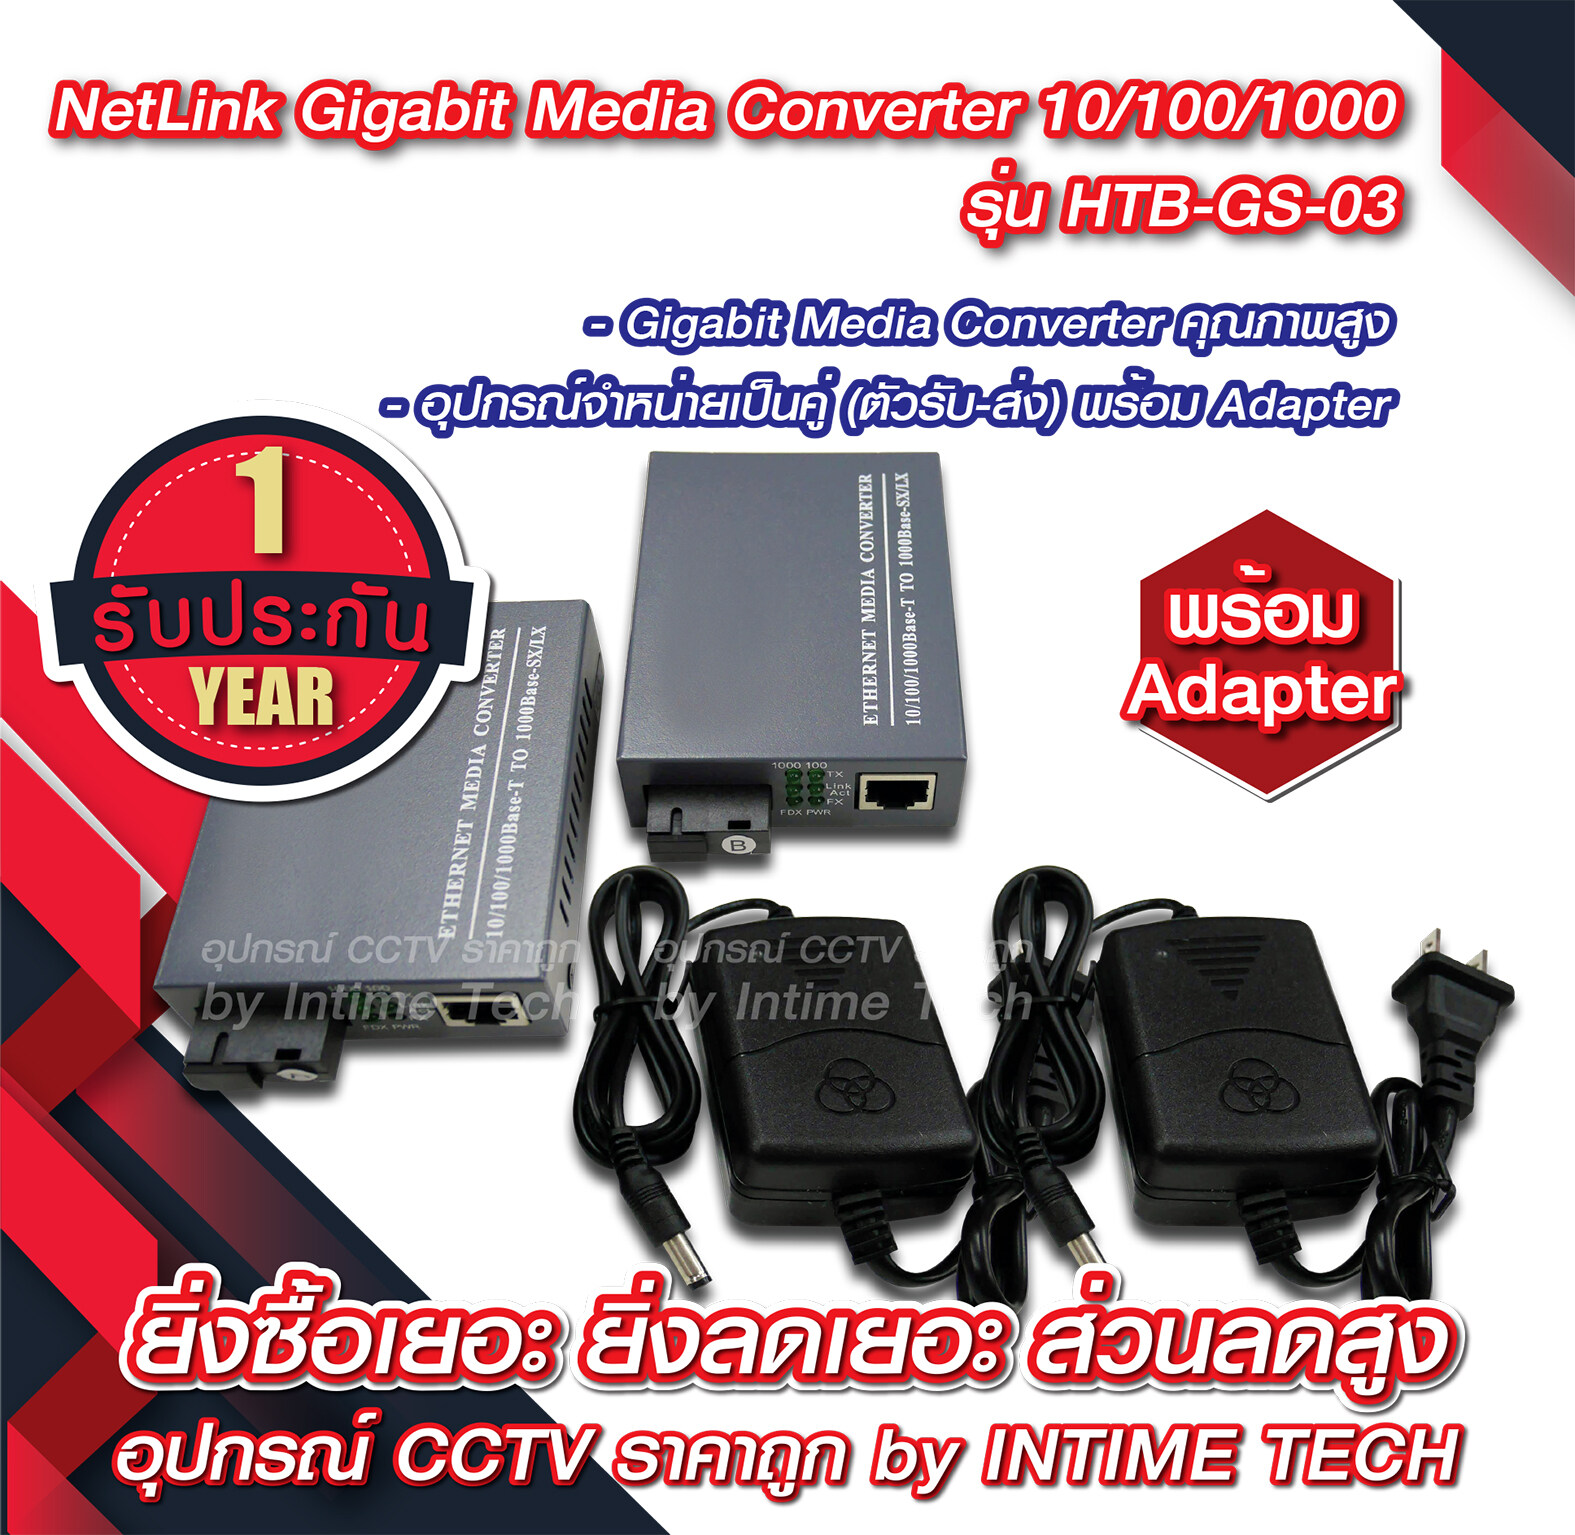 Netlink Media Converter 10/100/1000 MBPS / netlink media converter